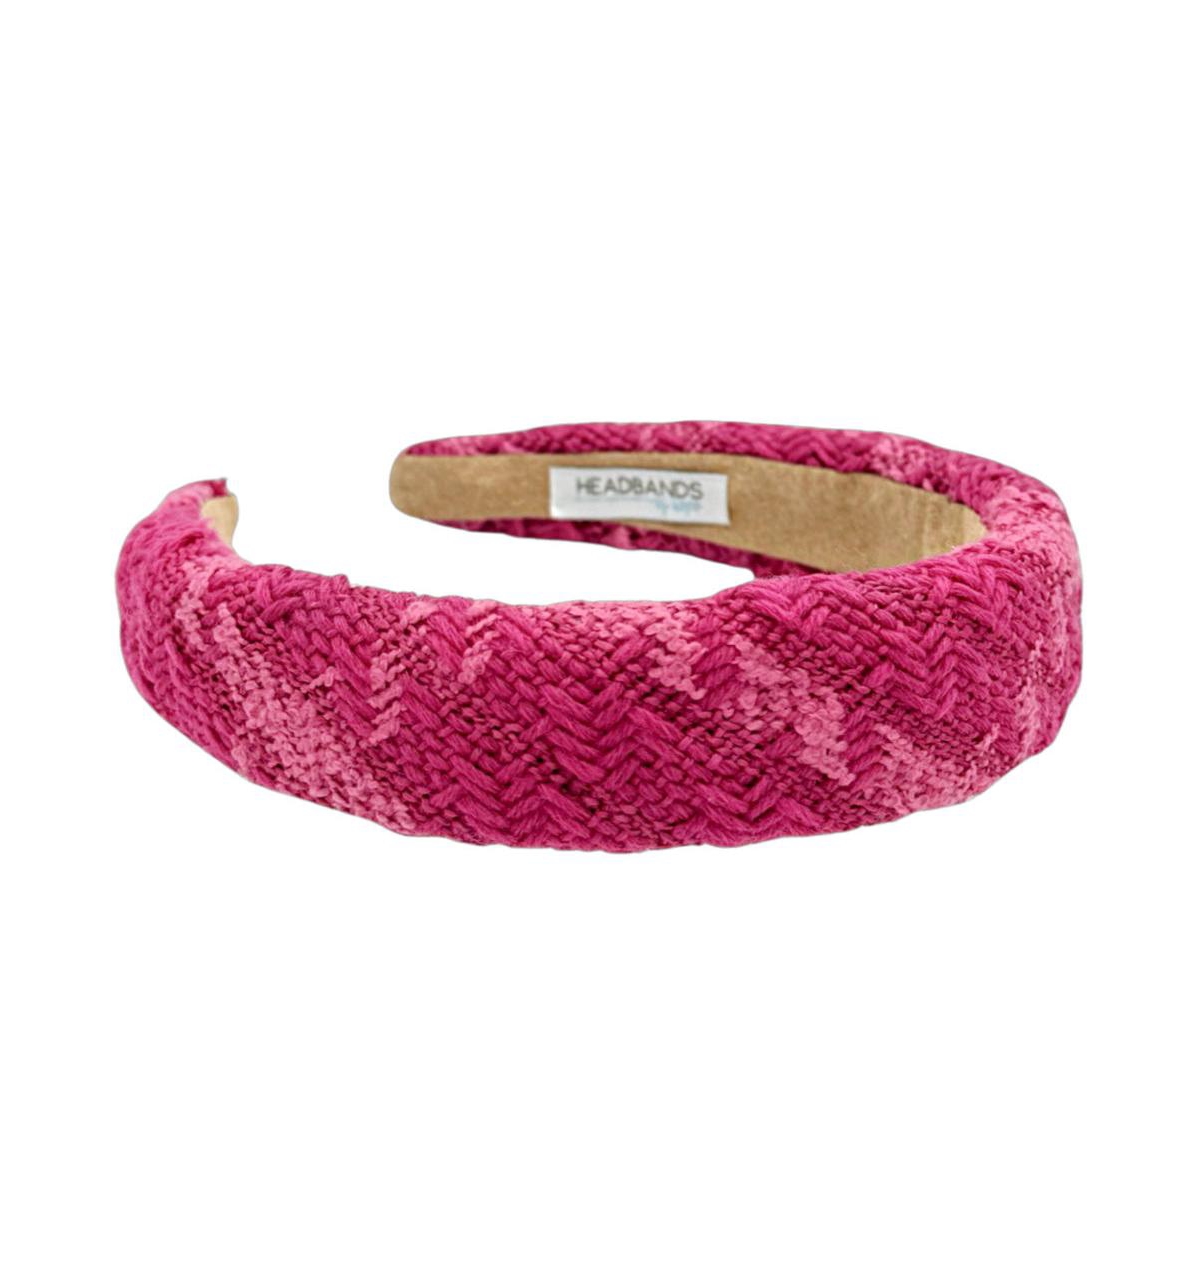 Padded Headband - Hot Pink Check - Bright pink